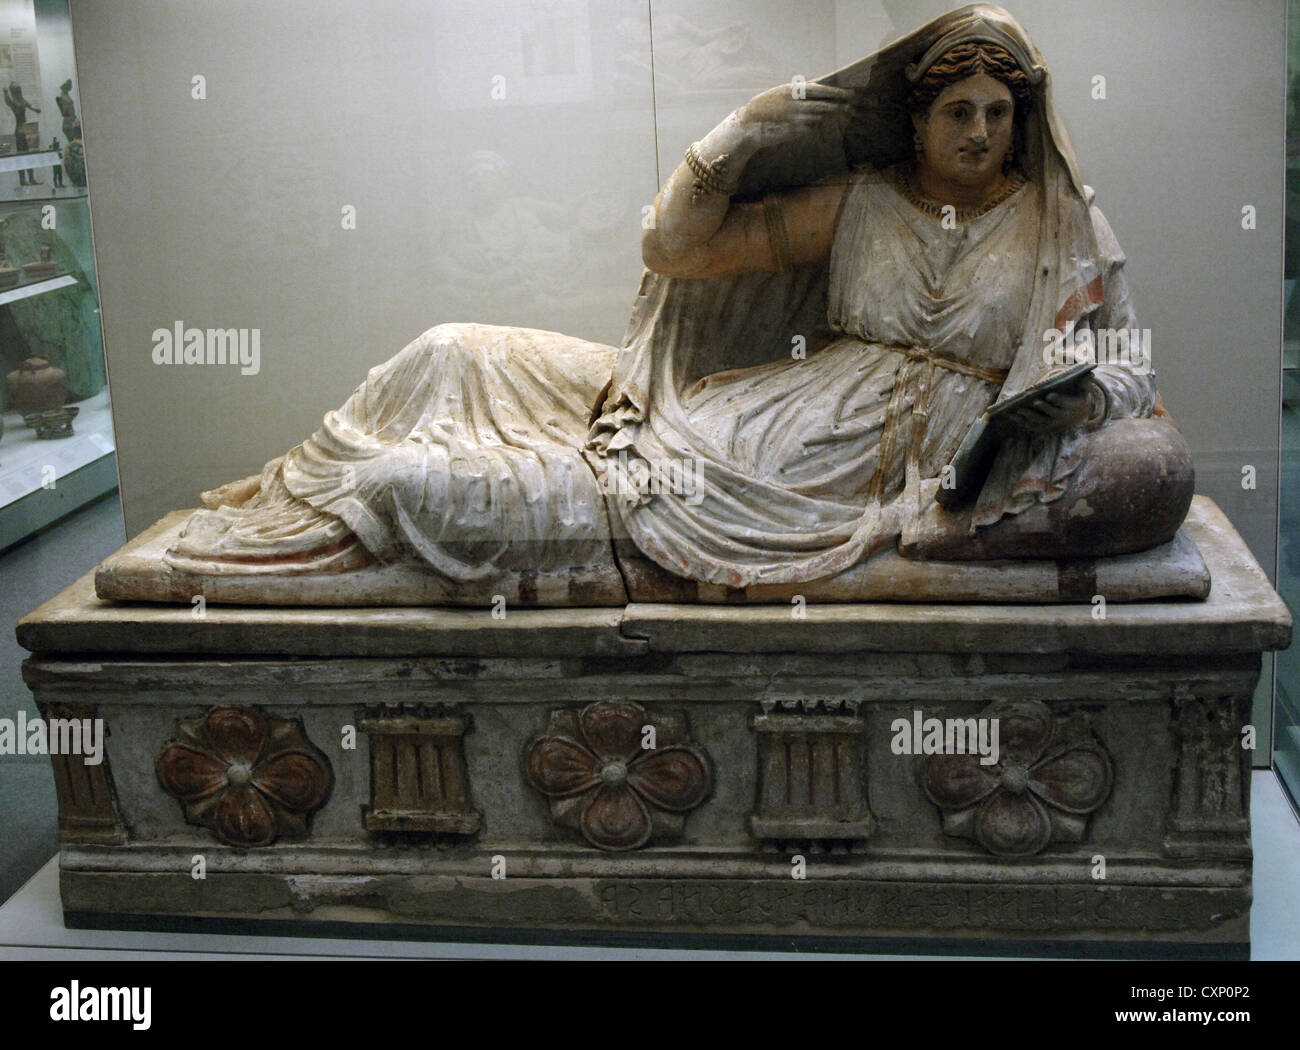 Sarcófago etrusco de Seianti Hanunia Tlesnasa. Terracota policromada. 150-140 A.C. Desde Poggio Cantarello. Museo Británico. Foto de stock